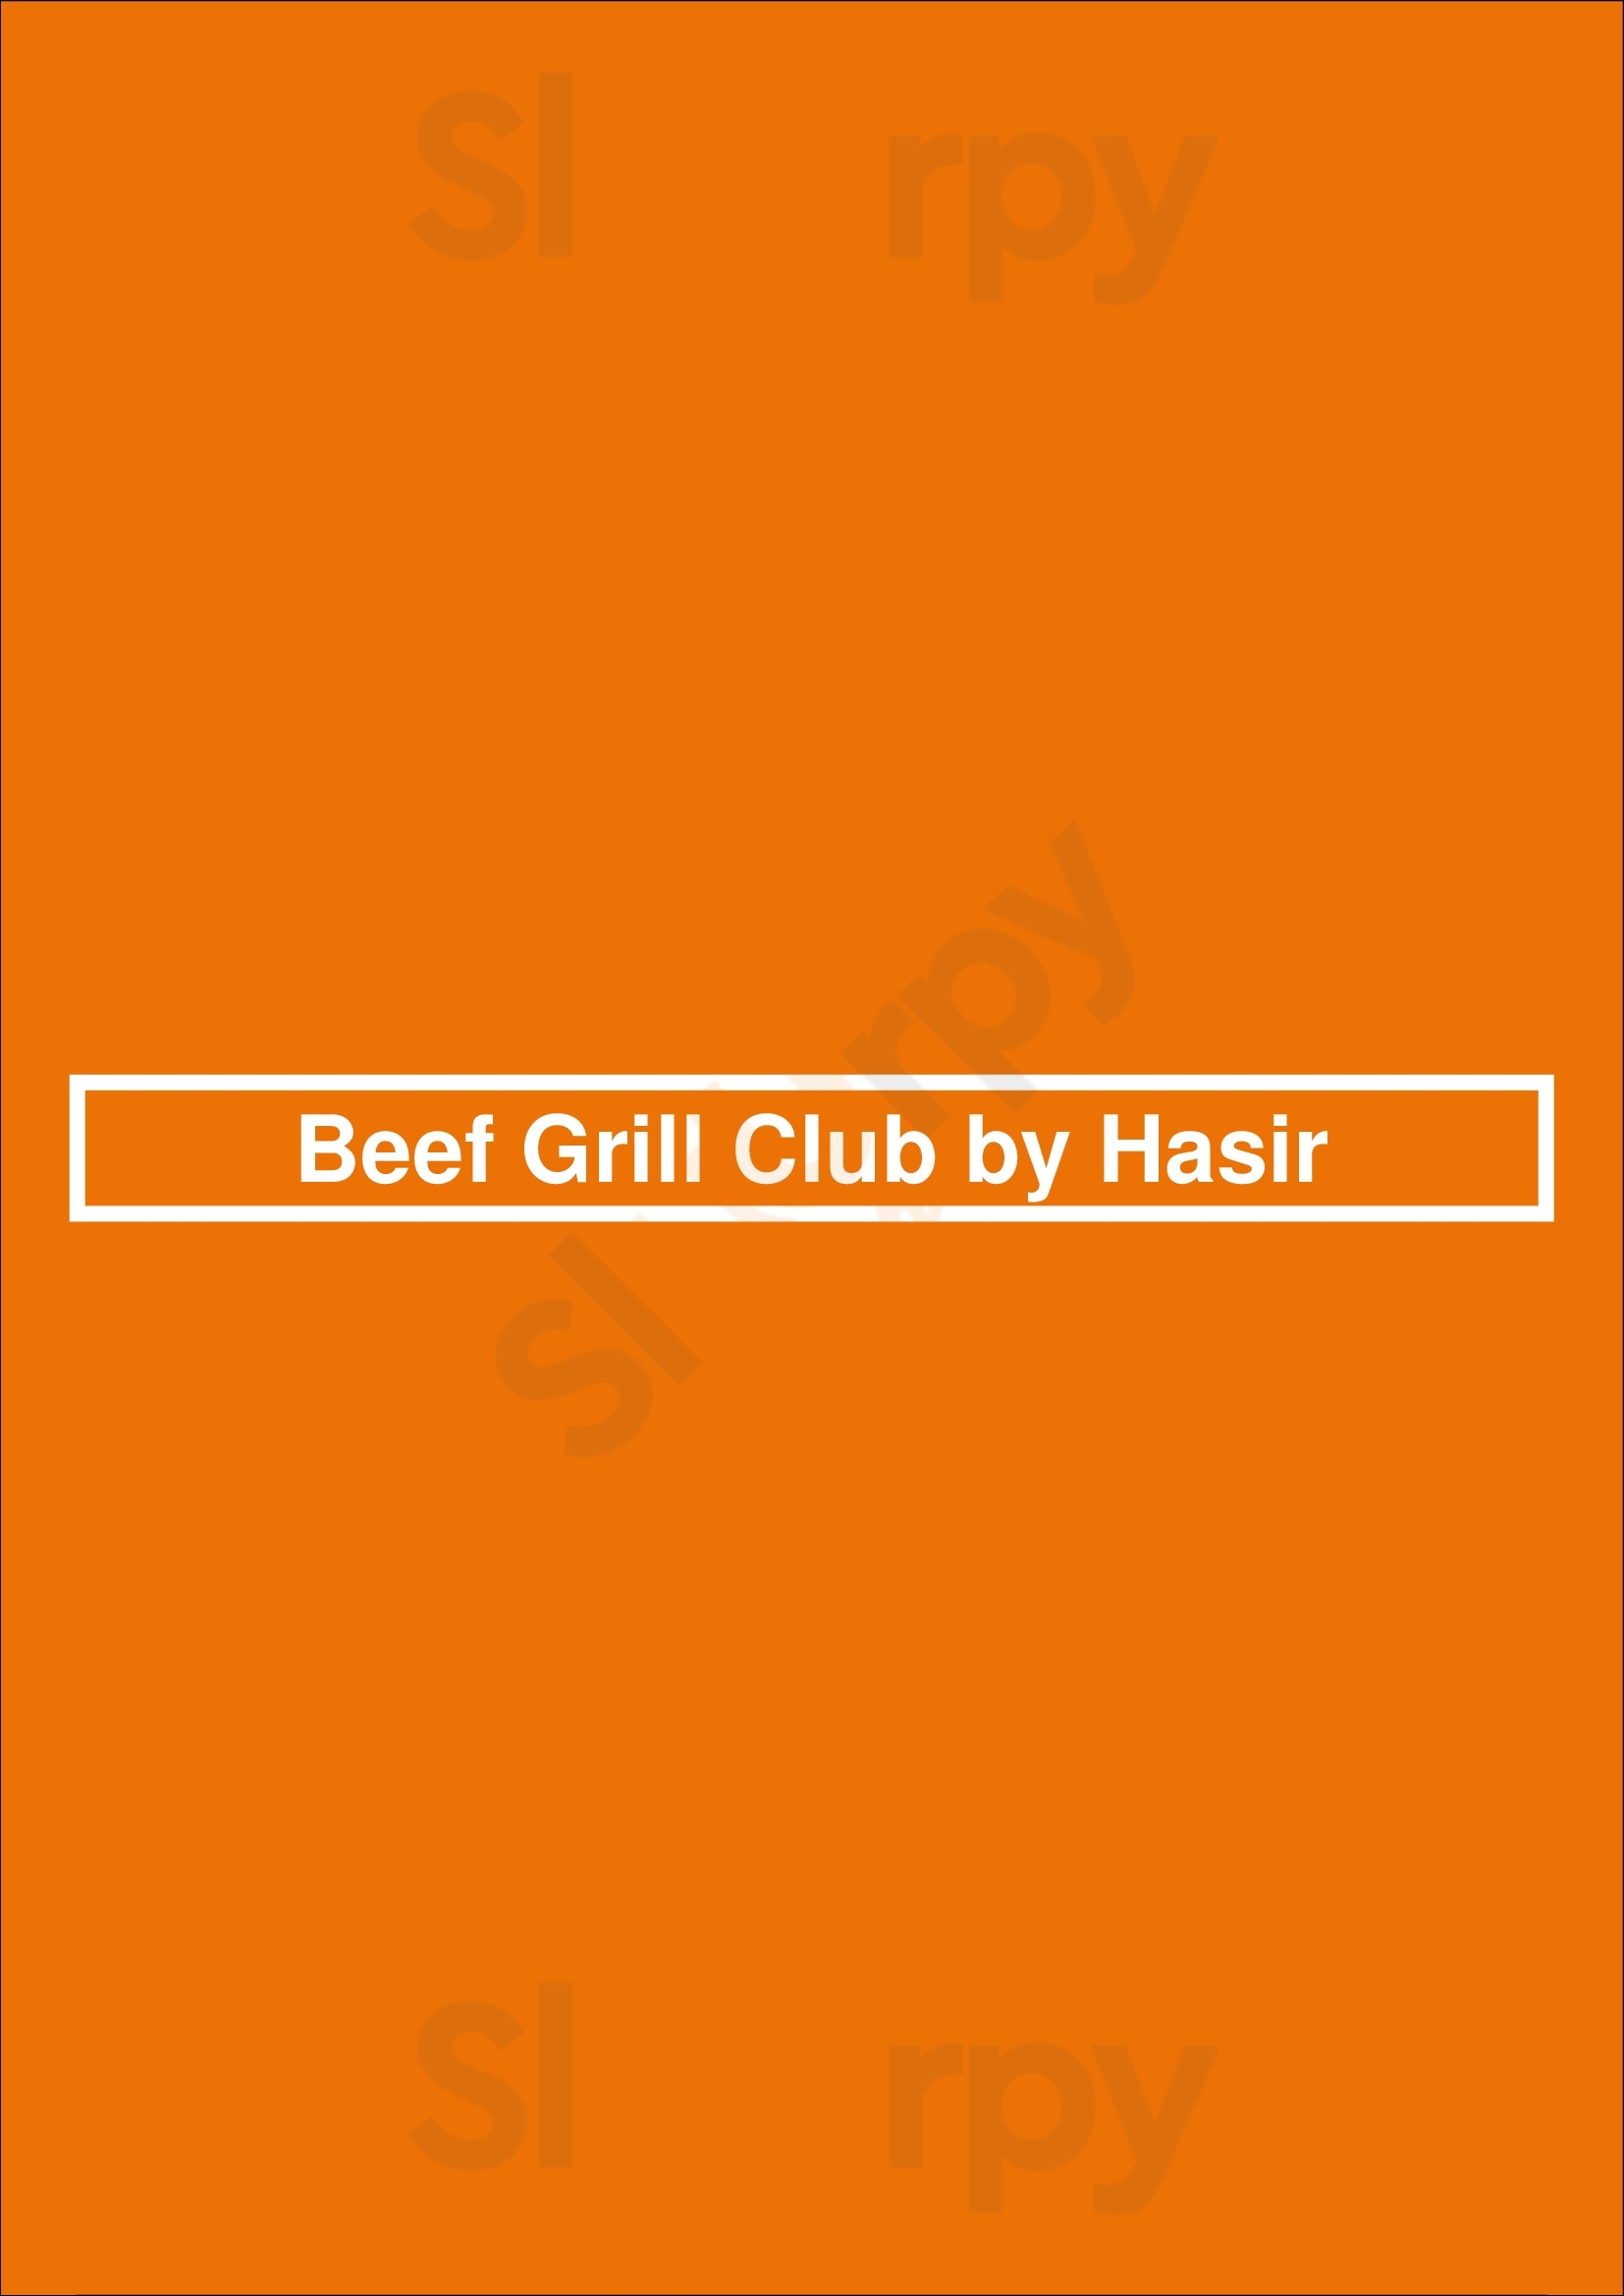 Beef Grill Club By Hasir Berlin Menu - 1